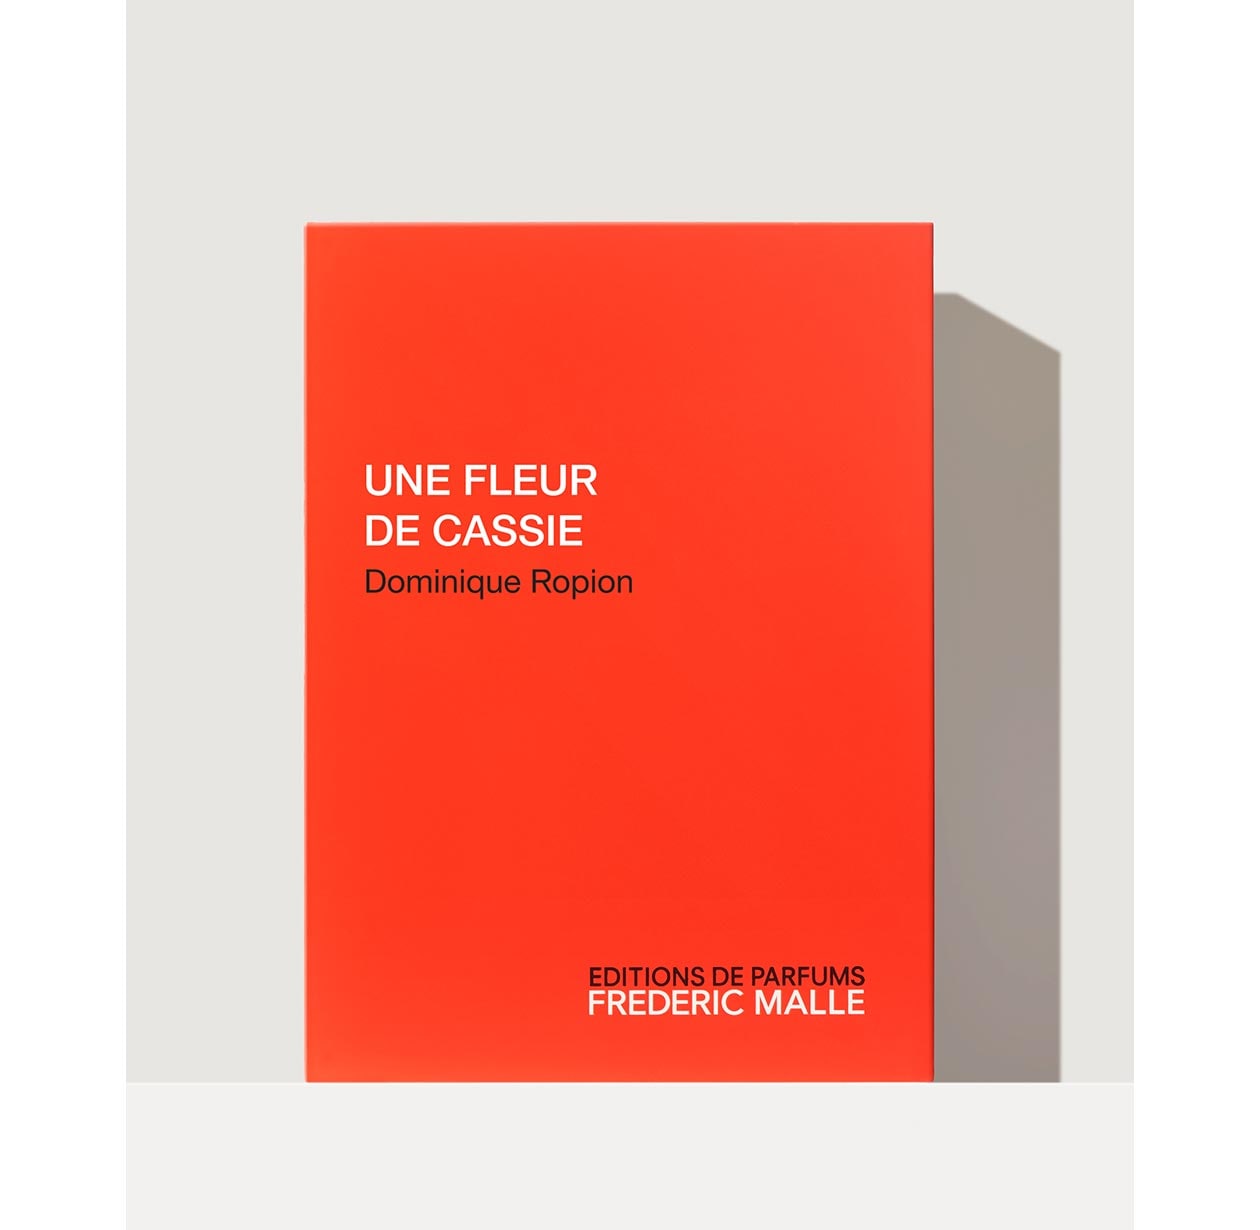 UNE FLEUR DE CASSIE by Dominique Ropion